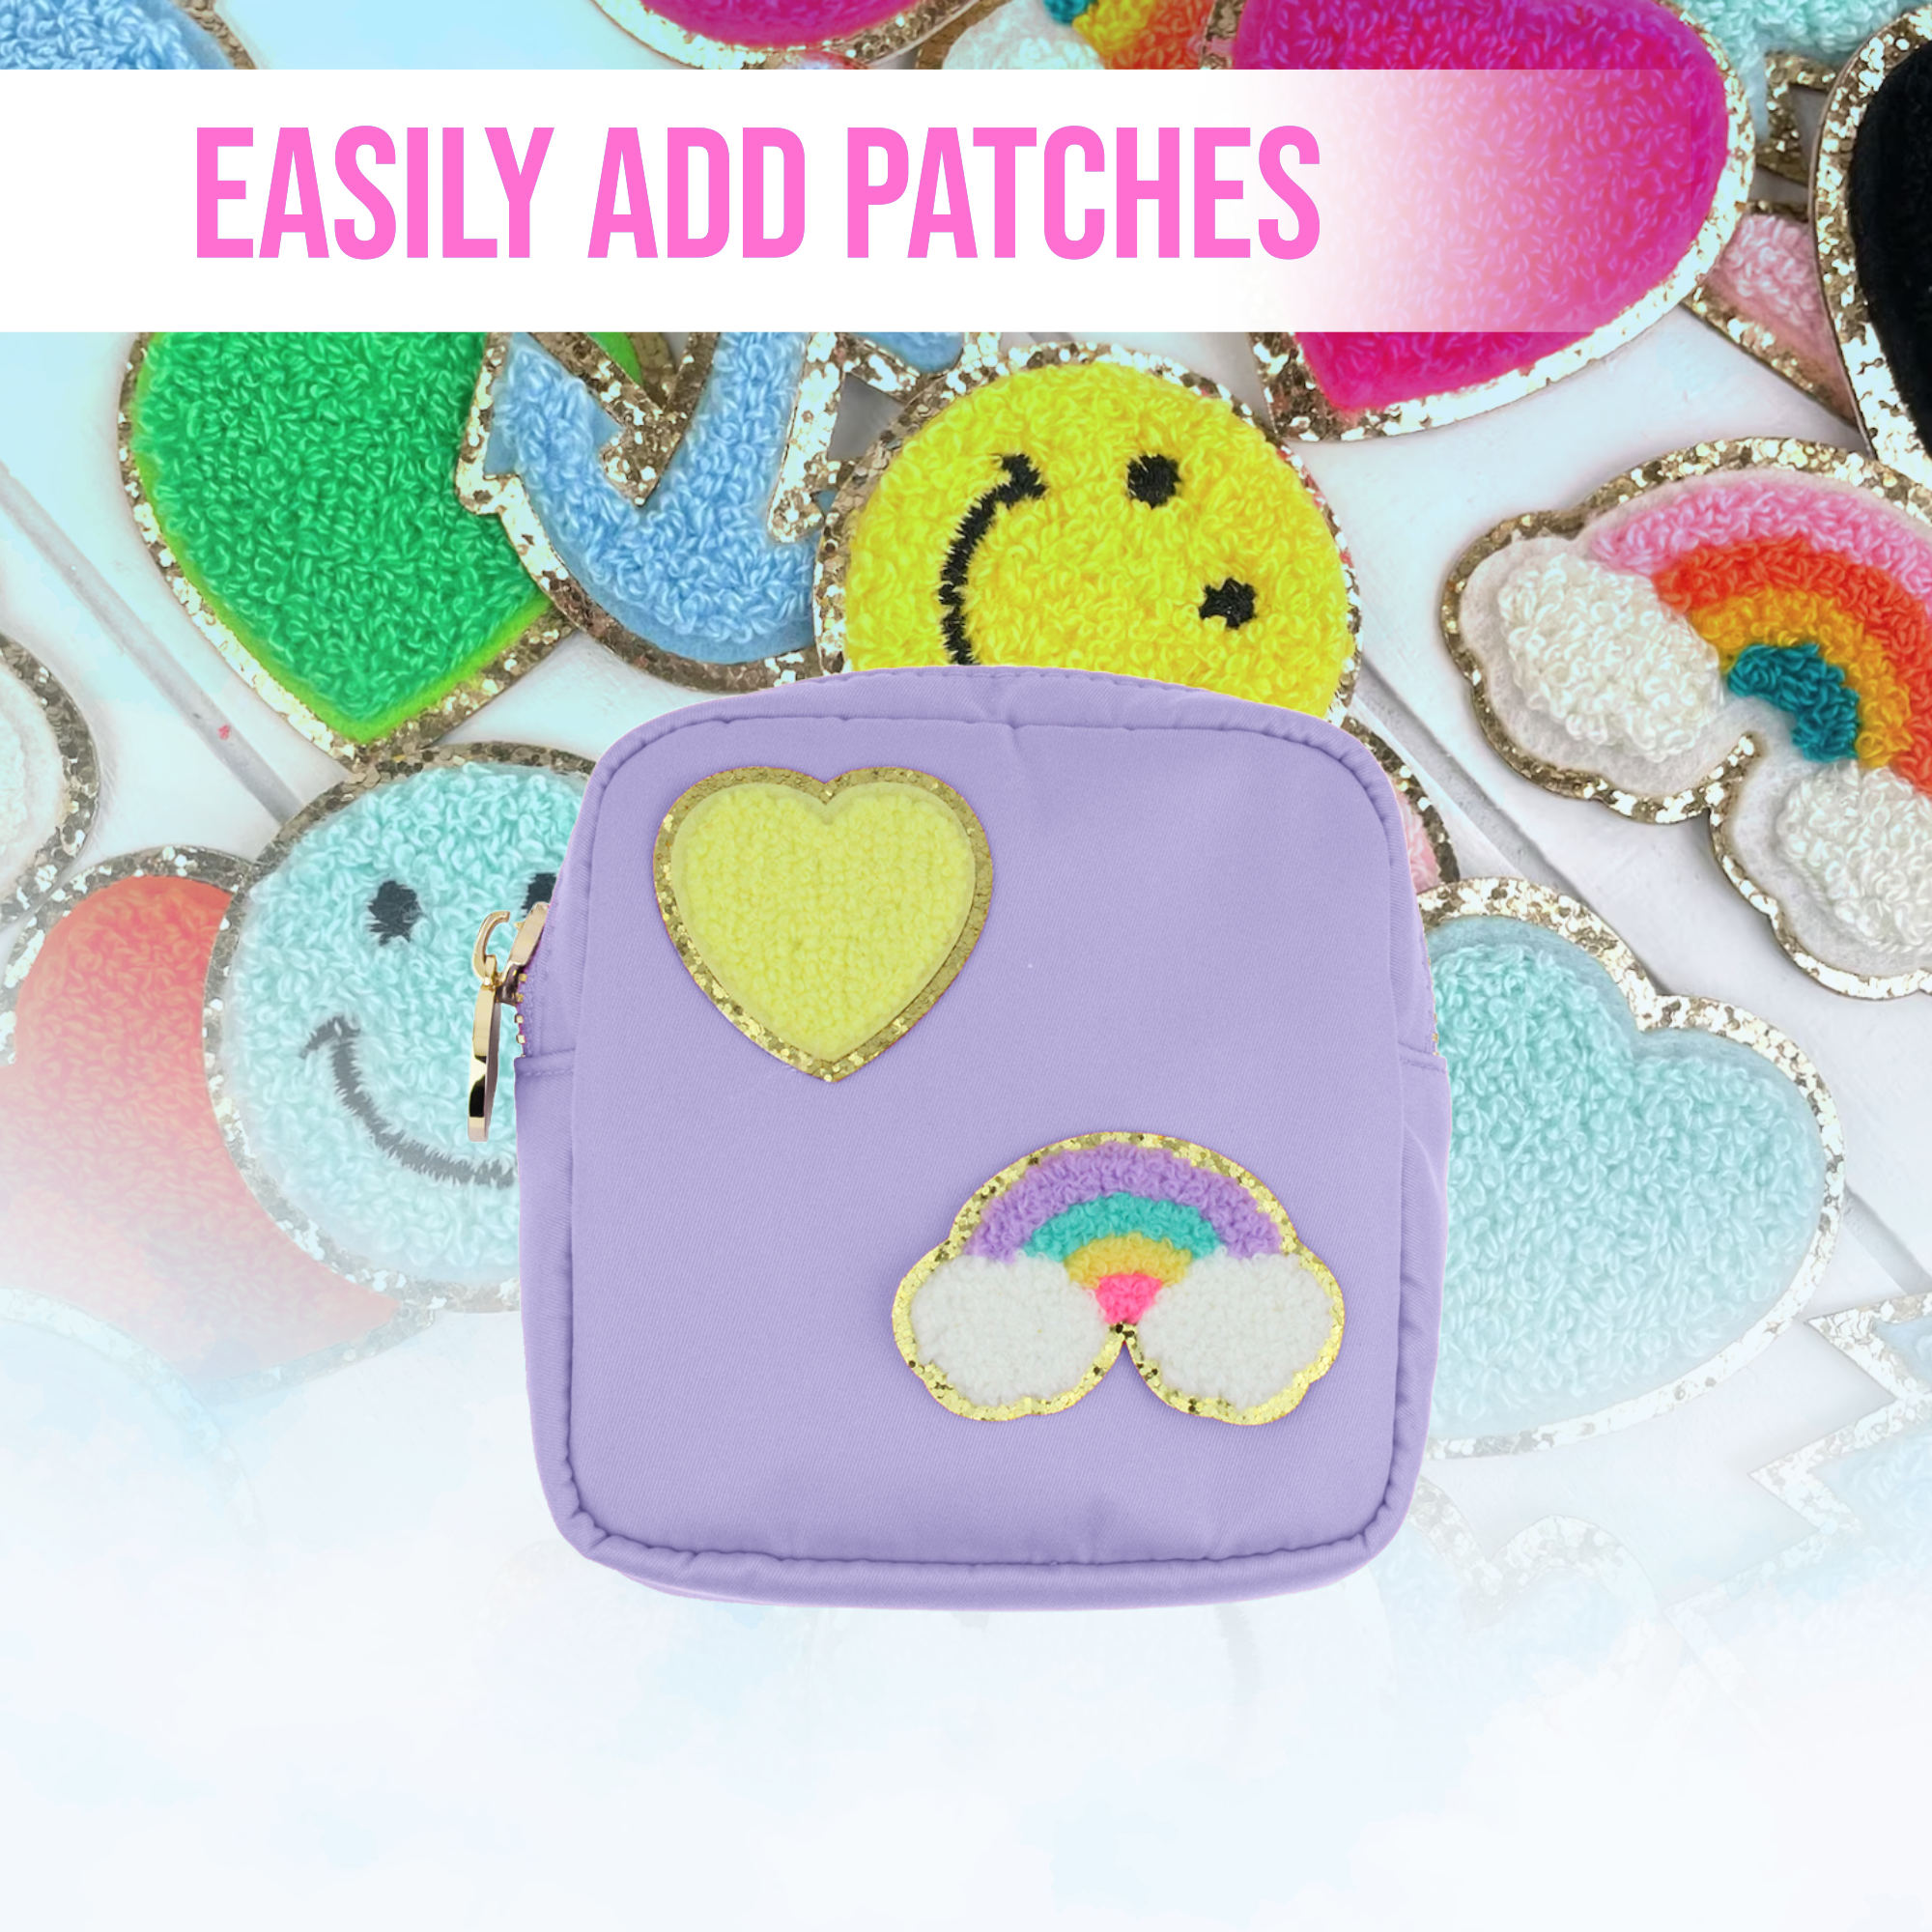 Mini Makeup Bag For Purse - Purple Pouch - Coin Purse Wallet For Women